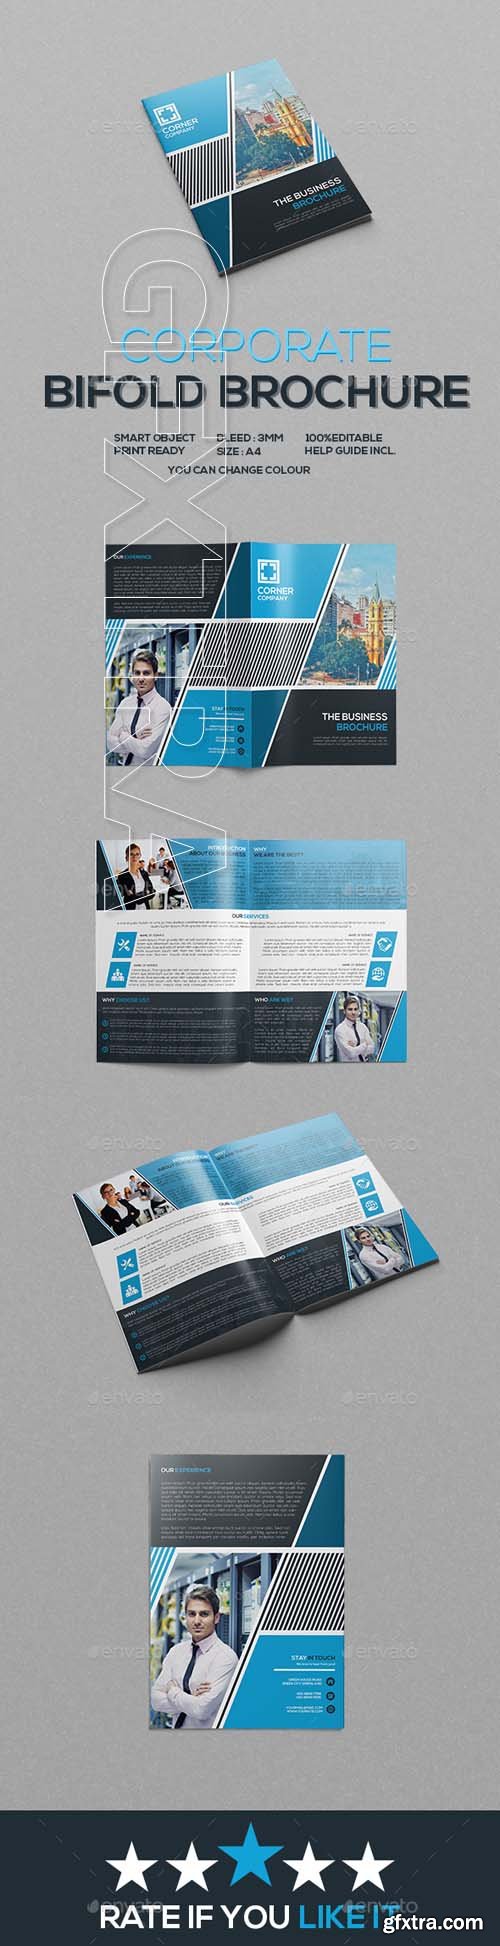 GraphicRiver - Corporate Bifold Brochure 20475575